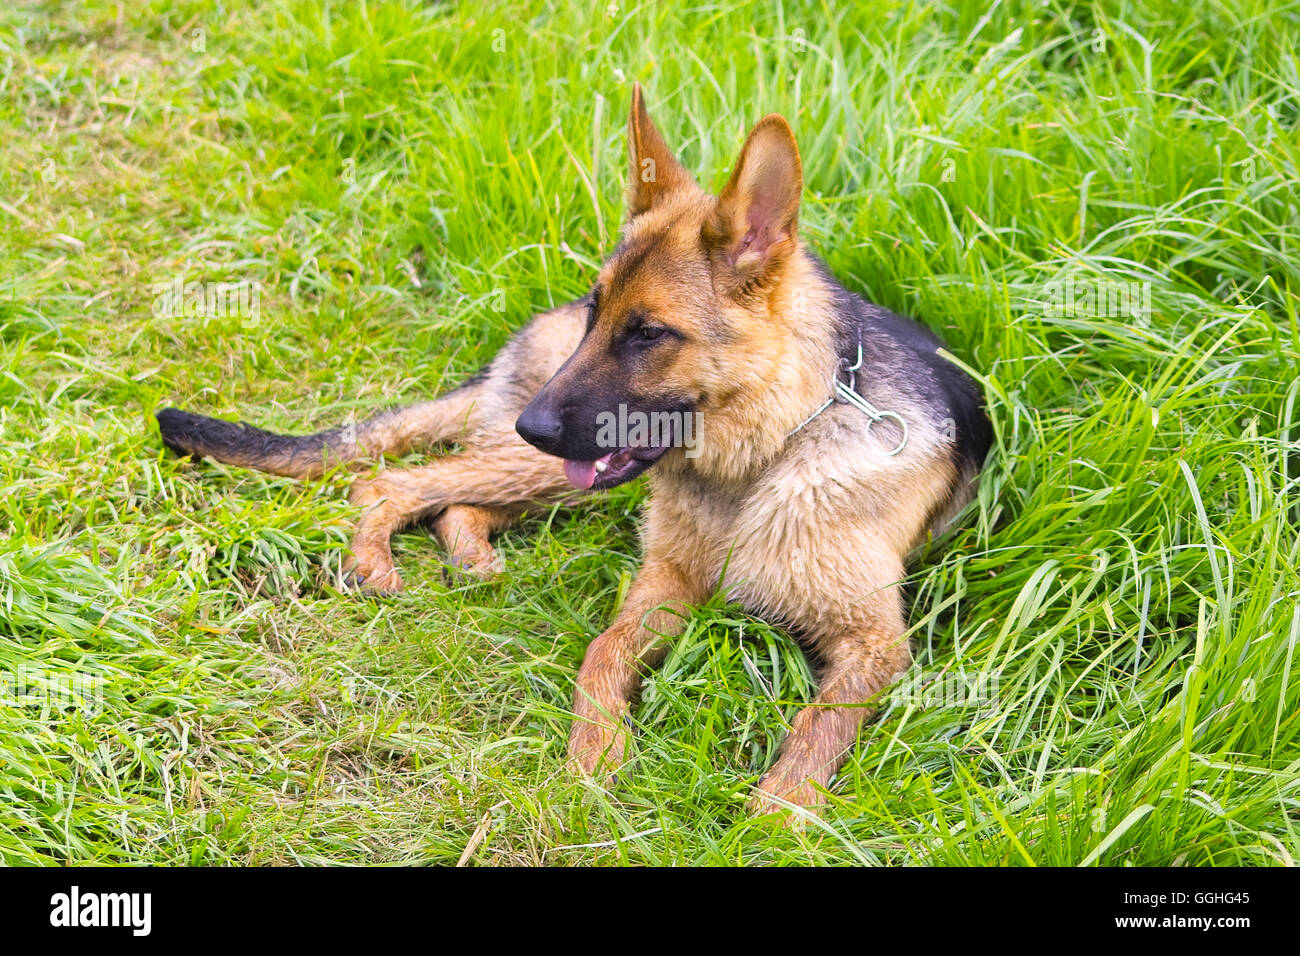 Jeune Berger allemand, chien sur herbe / Deutscher Schäferhund Welpe Banque D'Images